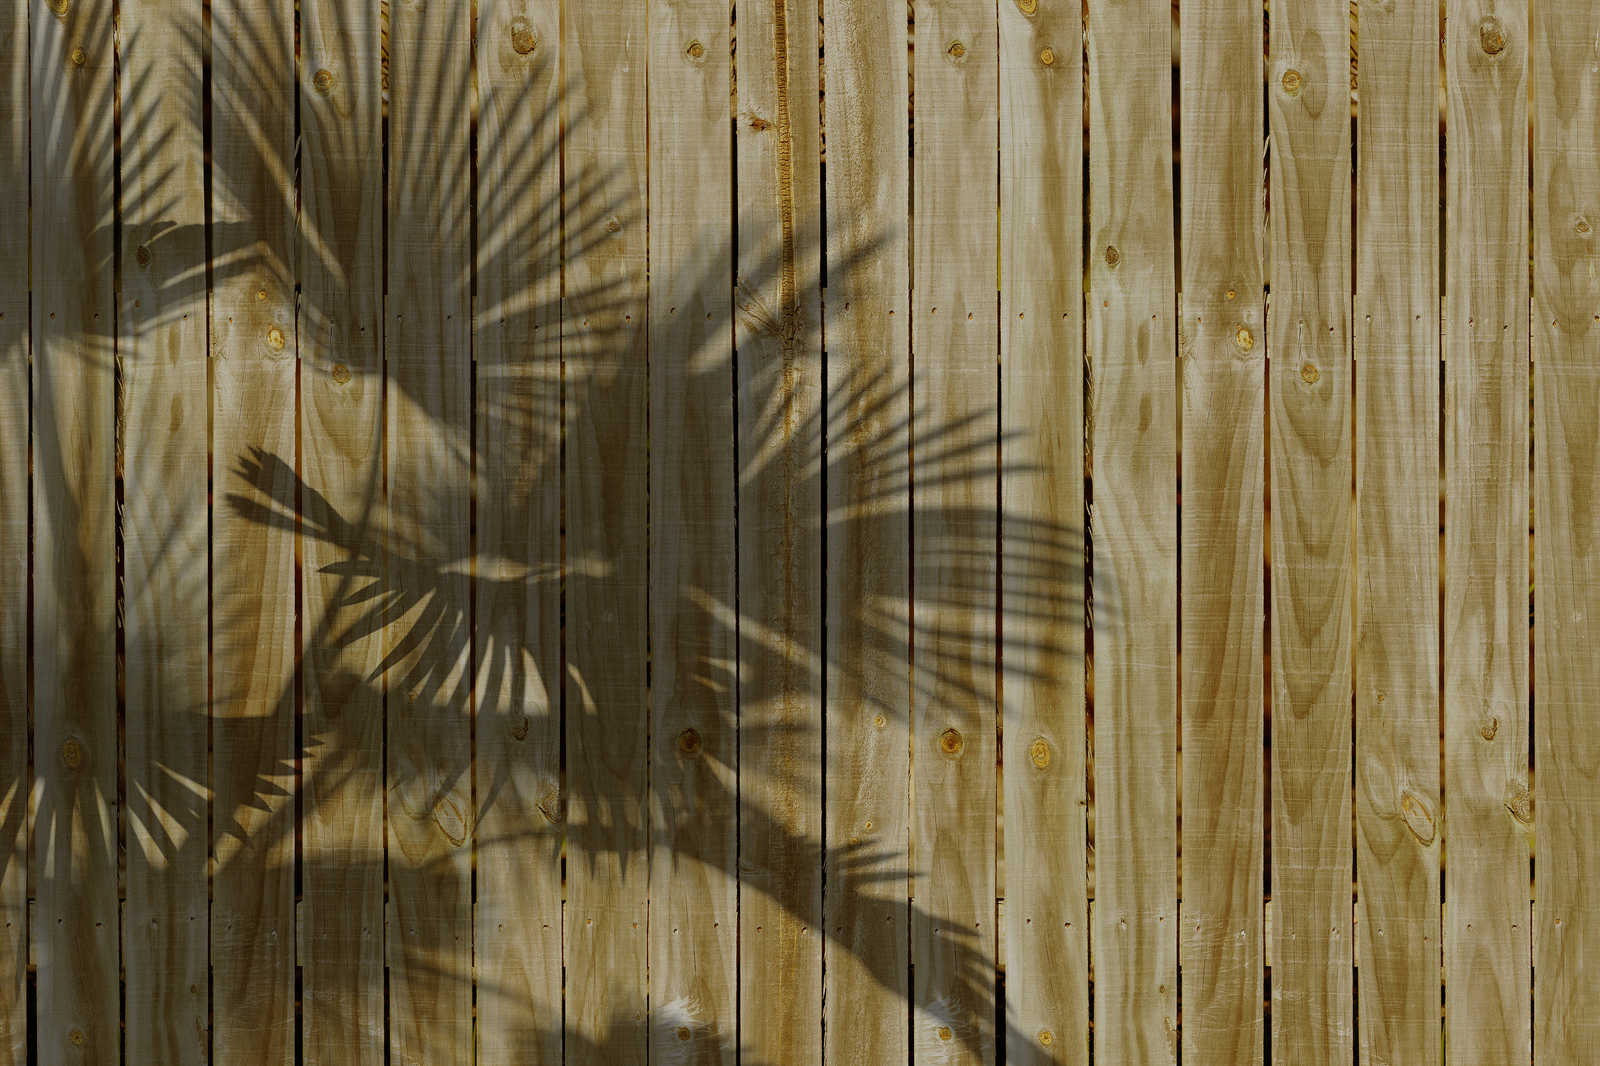             Quadro su tela con effetto legno e sfumature di foglie di palma - 0,90 m x 0,60 m
        